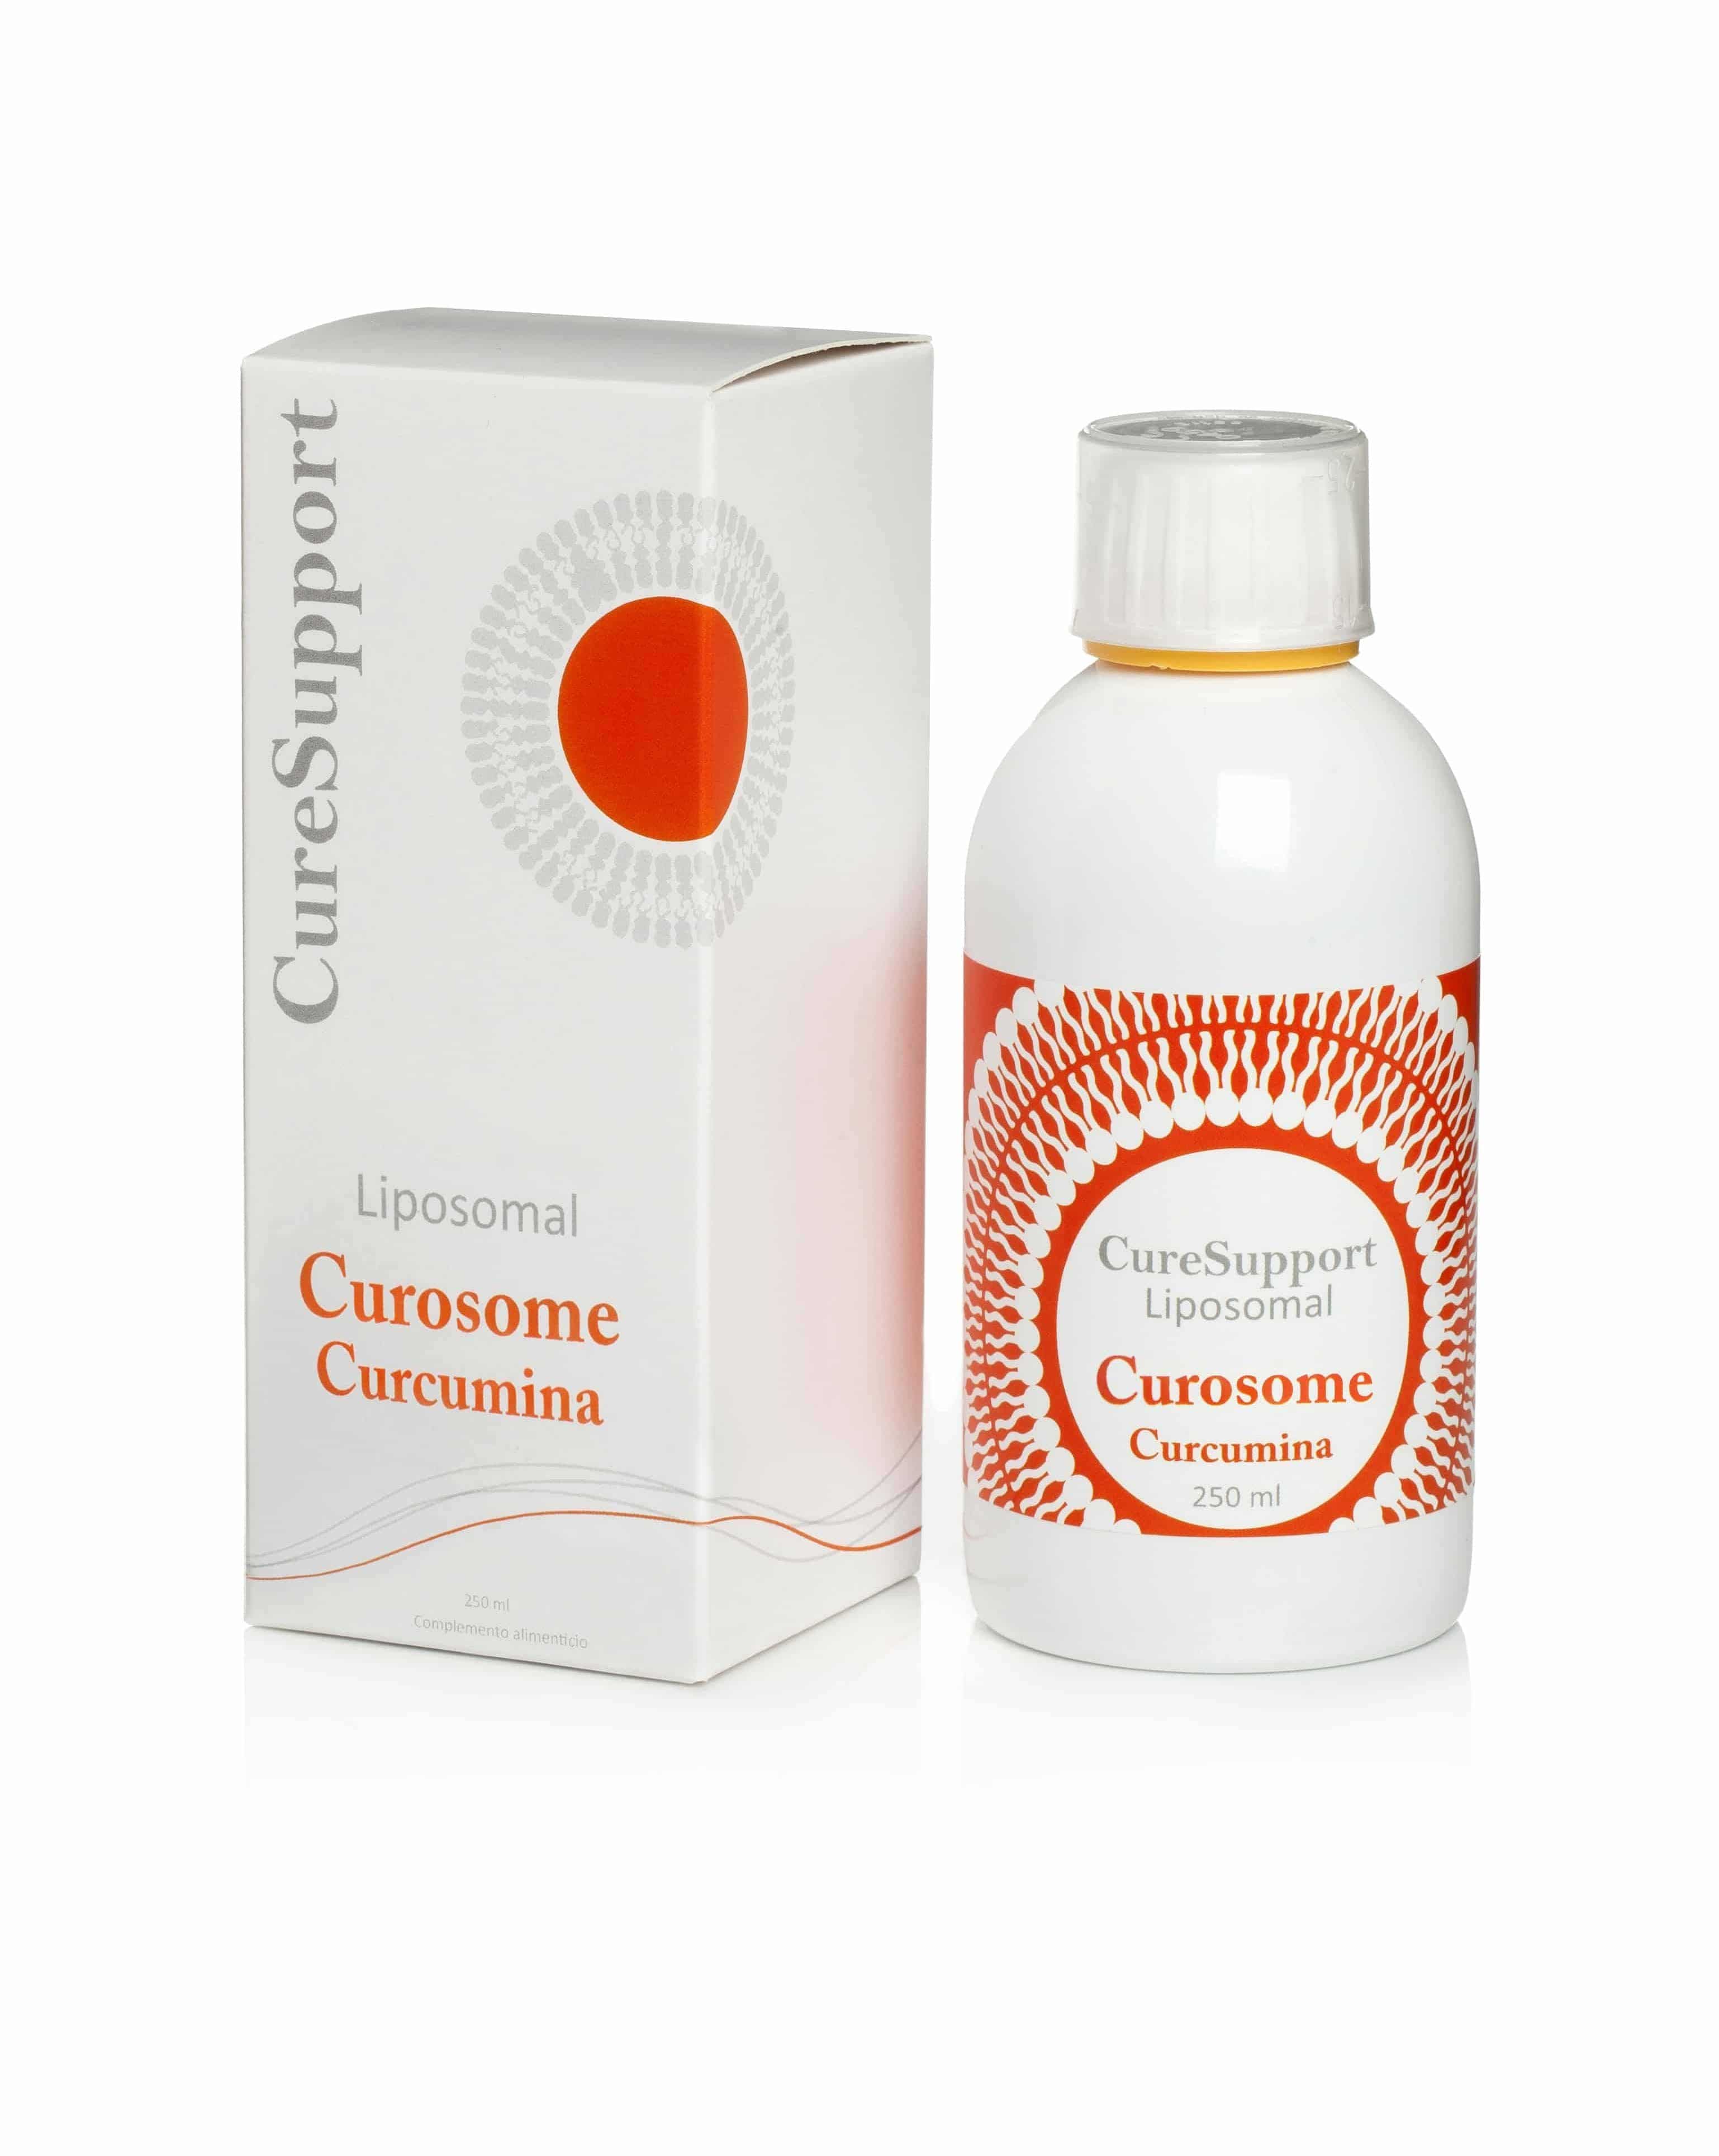 Liposomal Curosome Curcumina